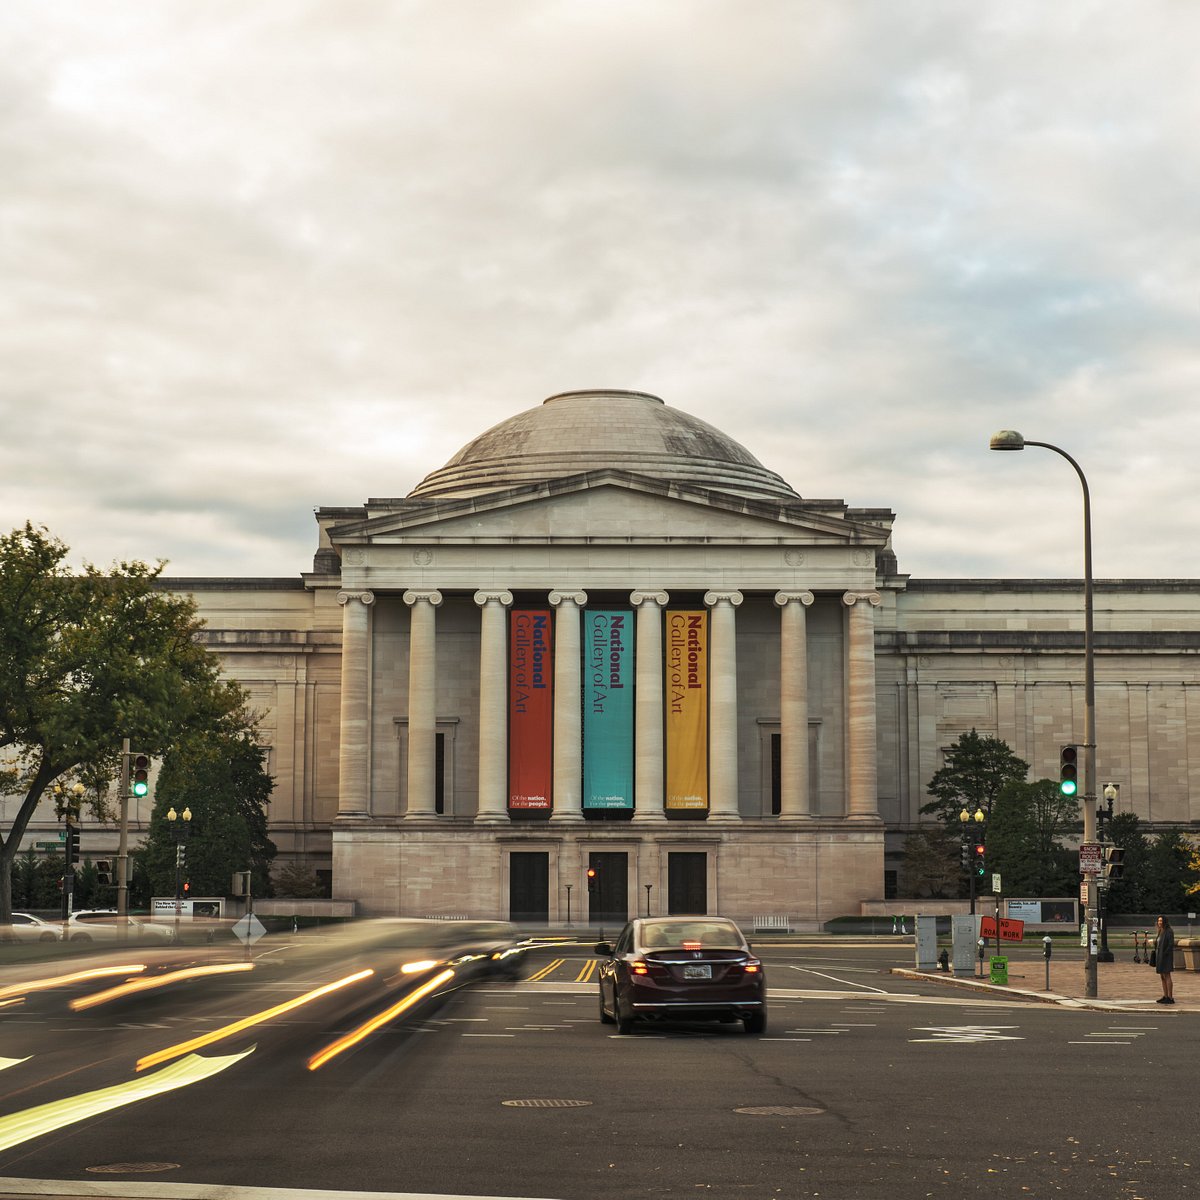 National Gallery of Art (Washington, D.C.) Lohnt es sich? (Mit fotos)